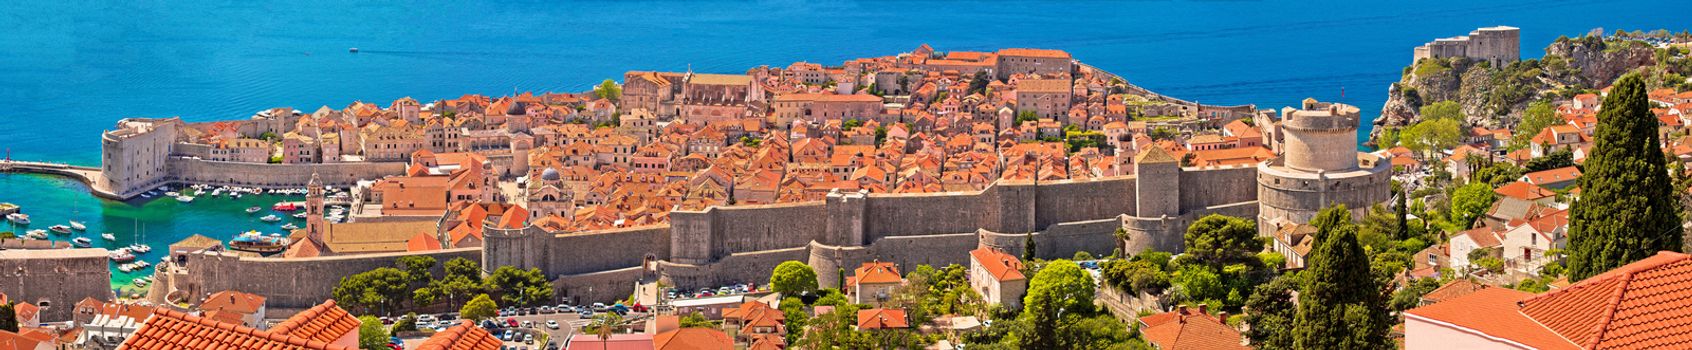 Historic town of Dubrovnik panoramic view, Dalmatia region of Croatia